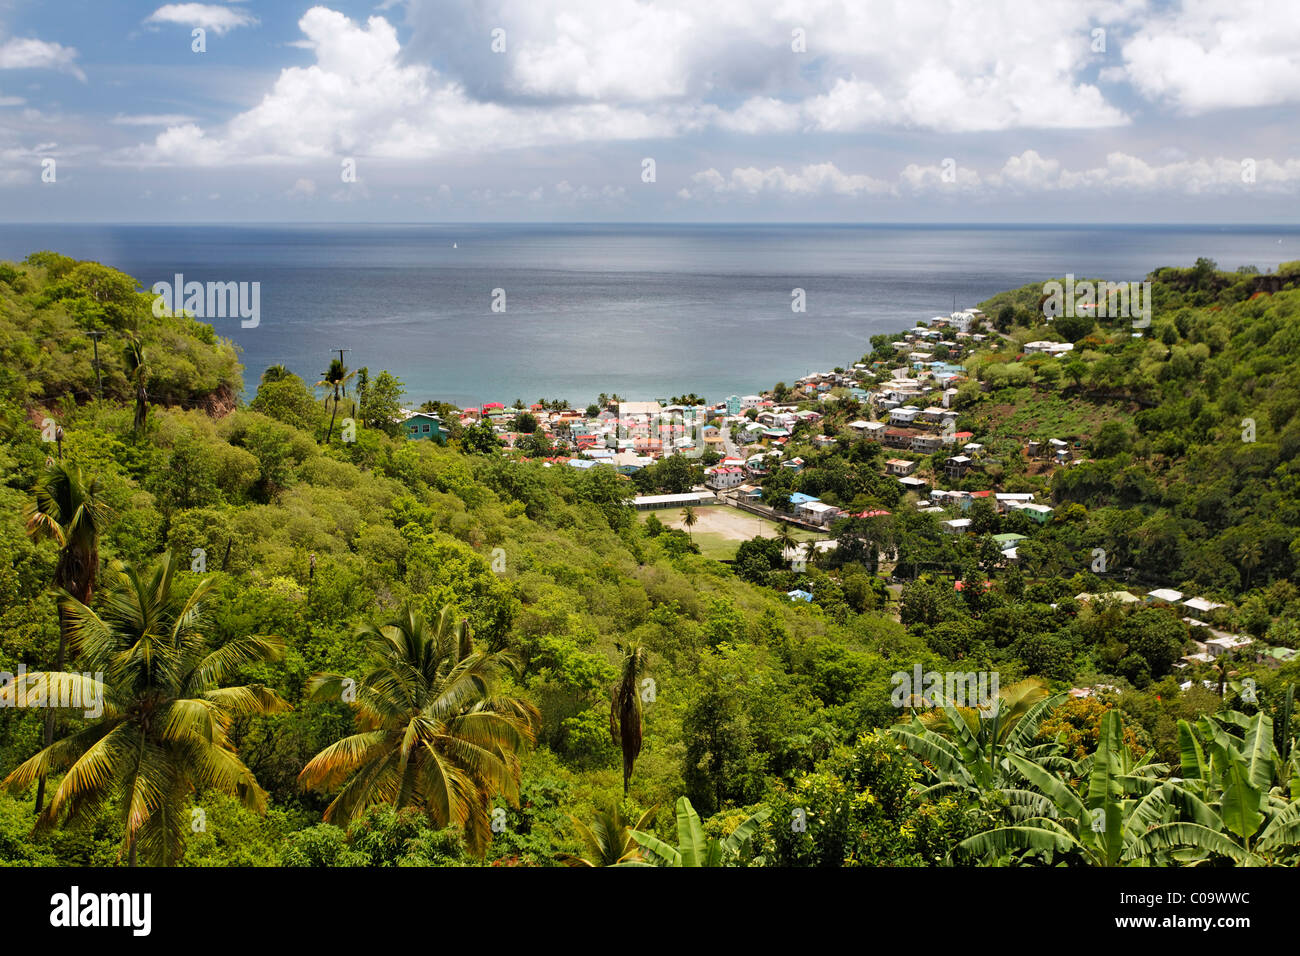 Grüne tropische Insellandschaft, Bucht, Meer, Stadt, Kanarischen Inseln, Saint Lucia, LCA, Windward-Inseln, kleine Antillen, Karibik Stockfoto